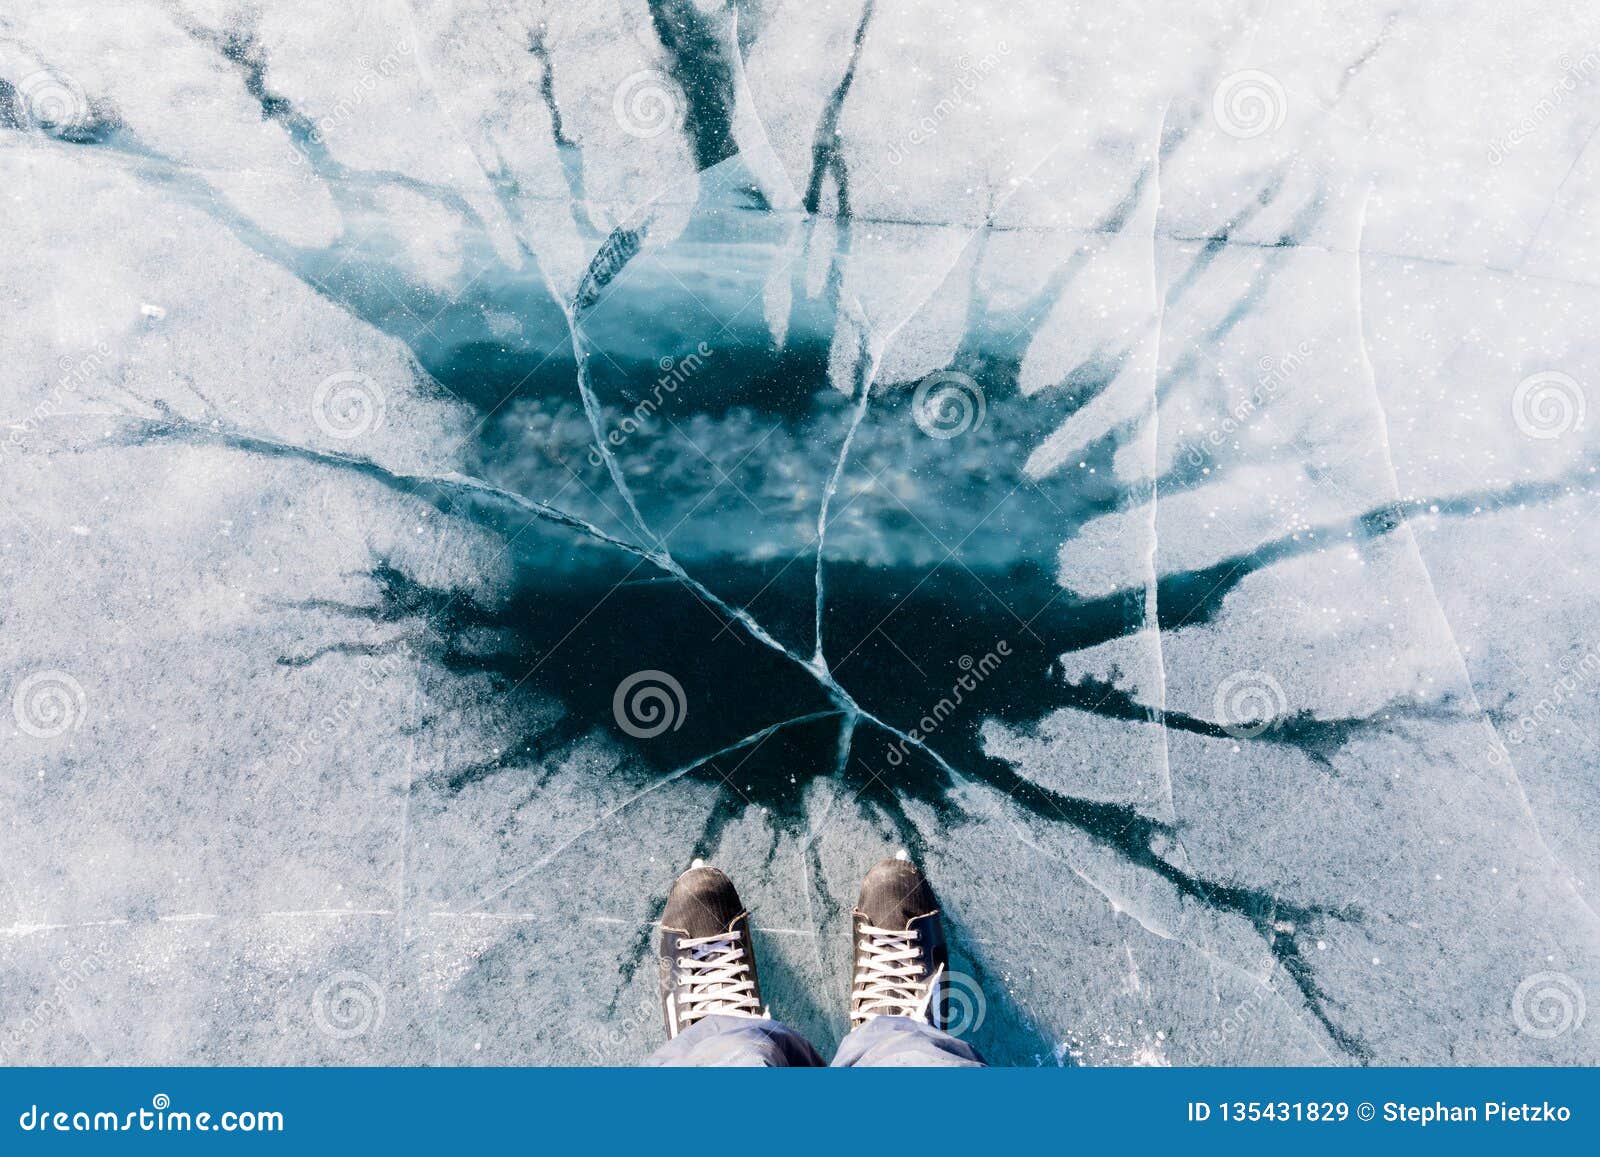 Раз по льду пошли трещины. Трещины на льду. Лед под ногами. Треснувший лед. Лед треснул под ногами.